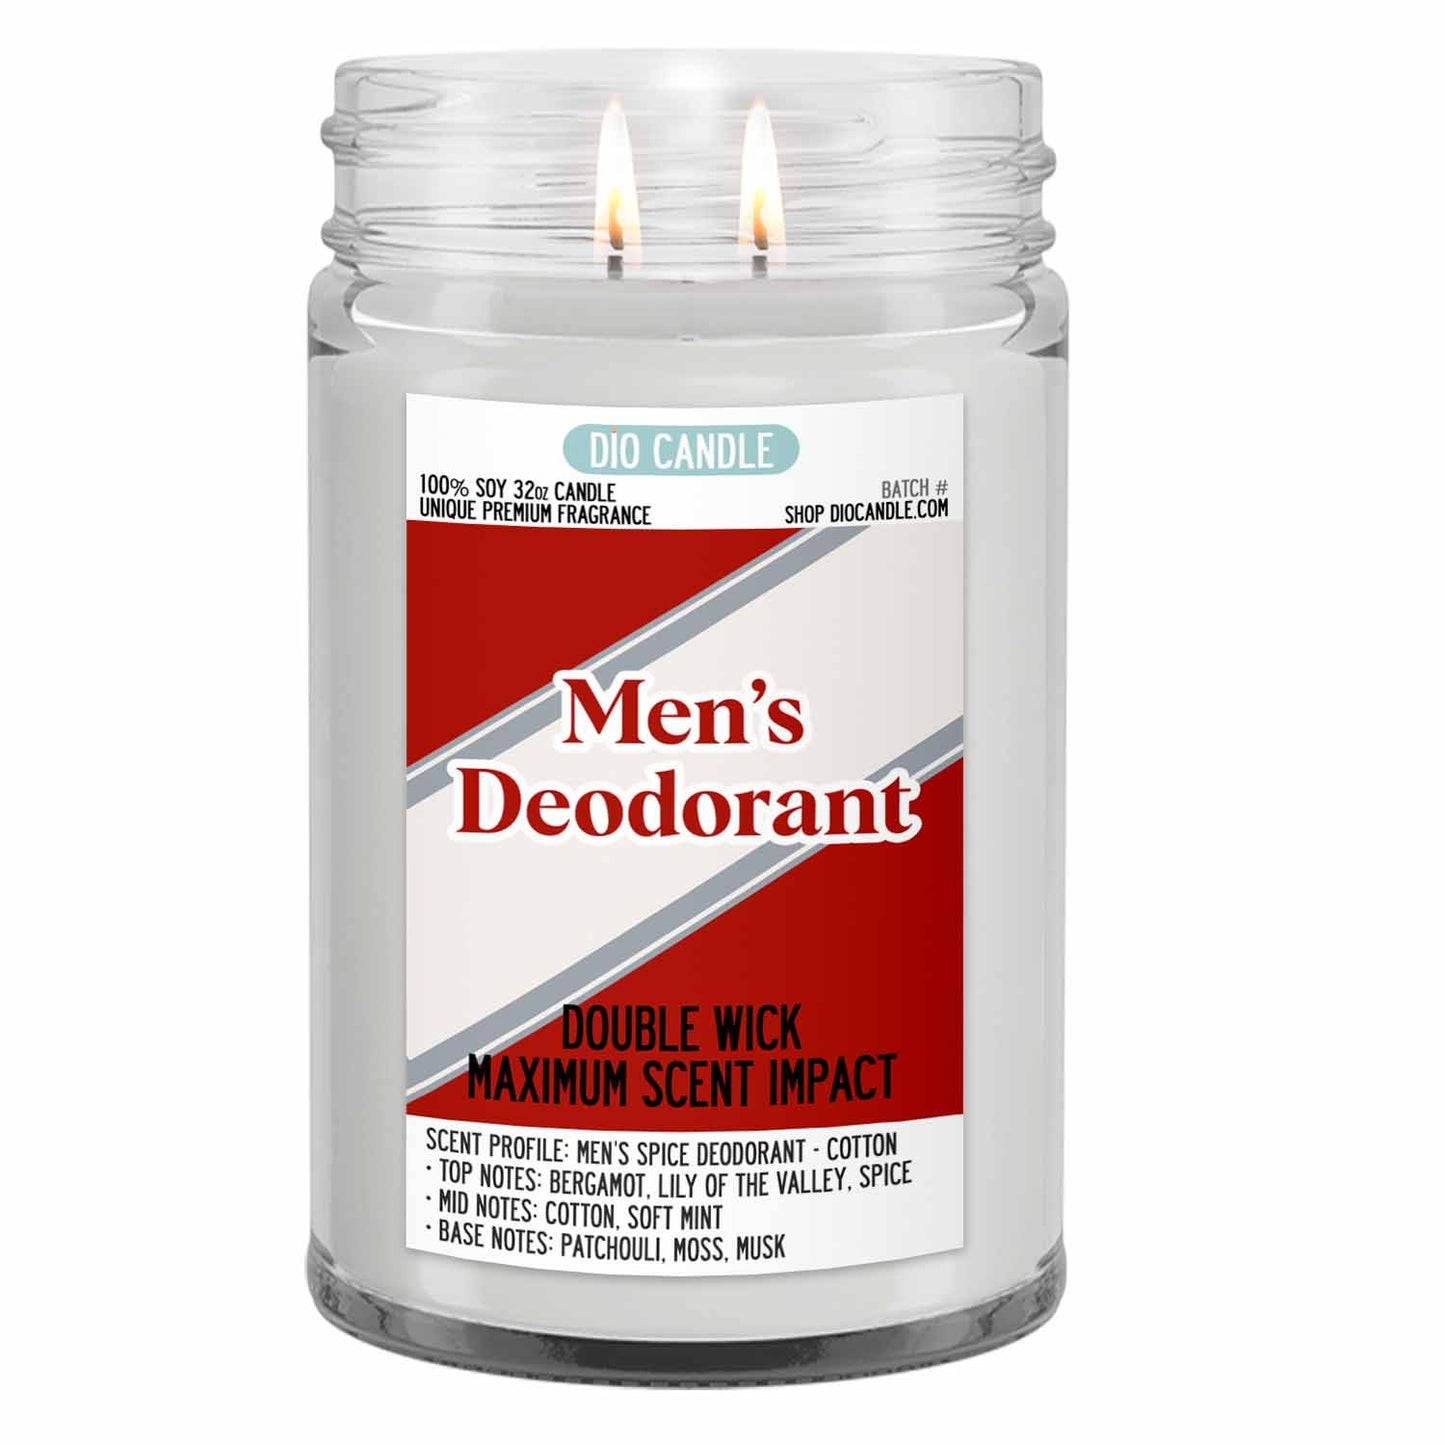 Men's Deodorant Candle